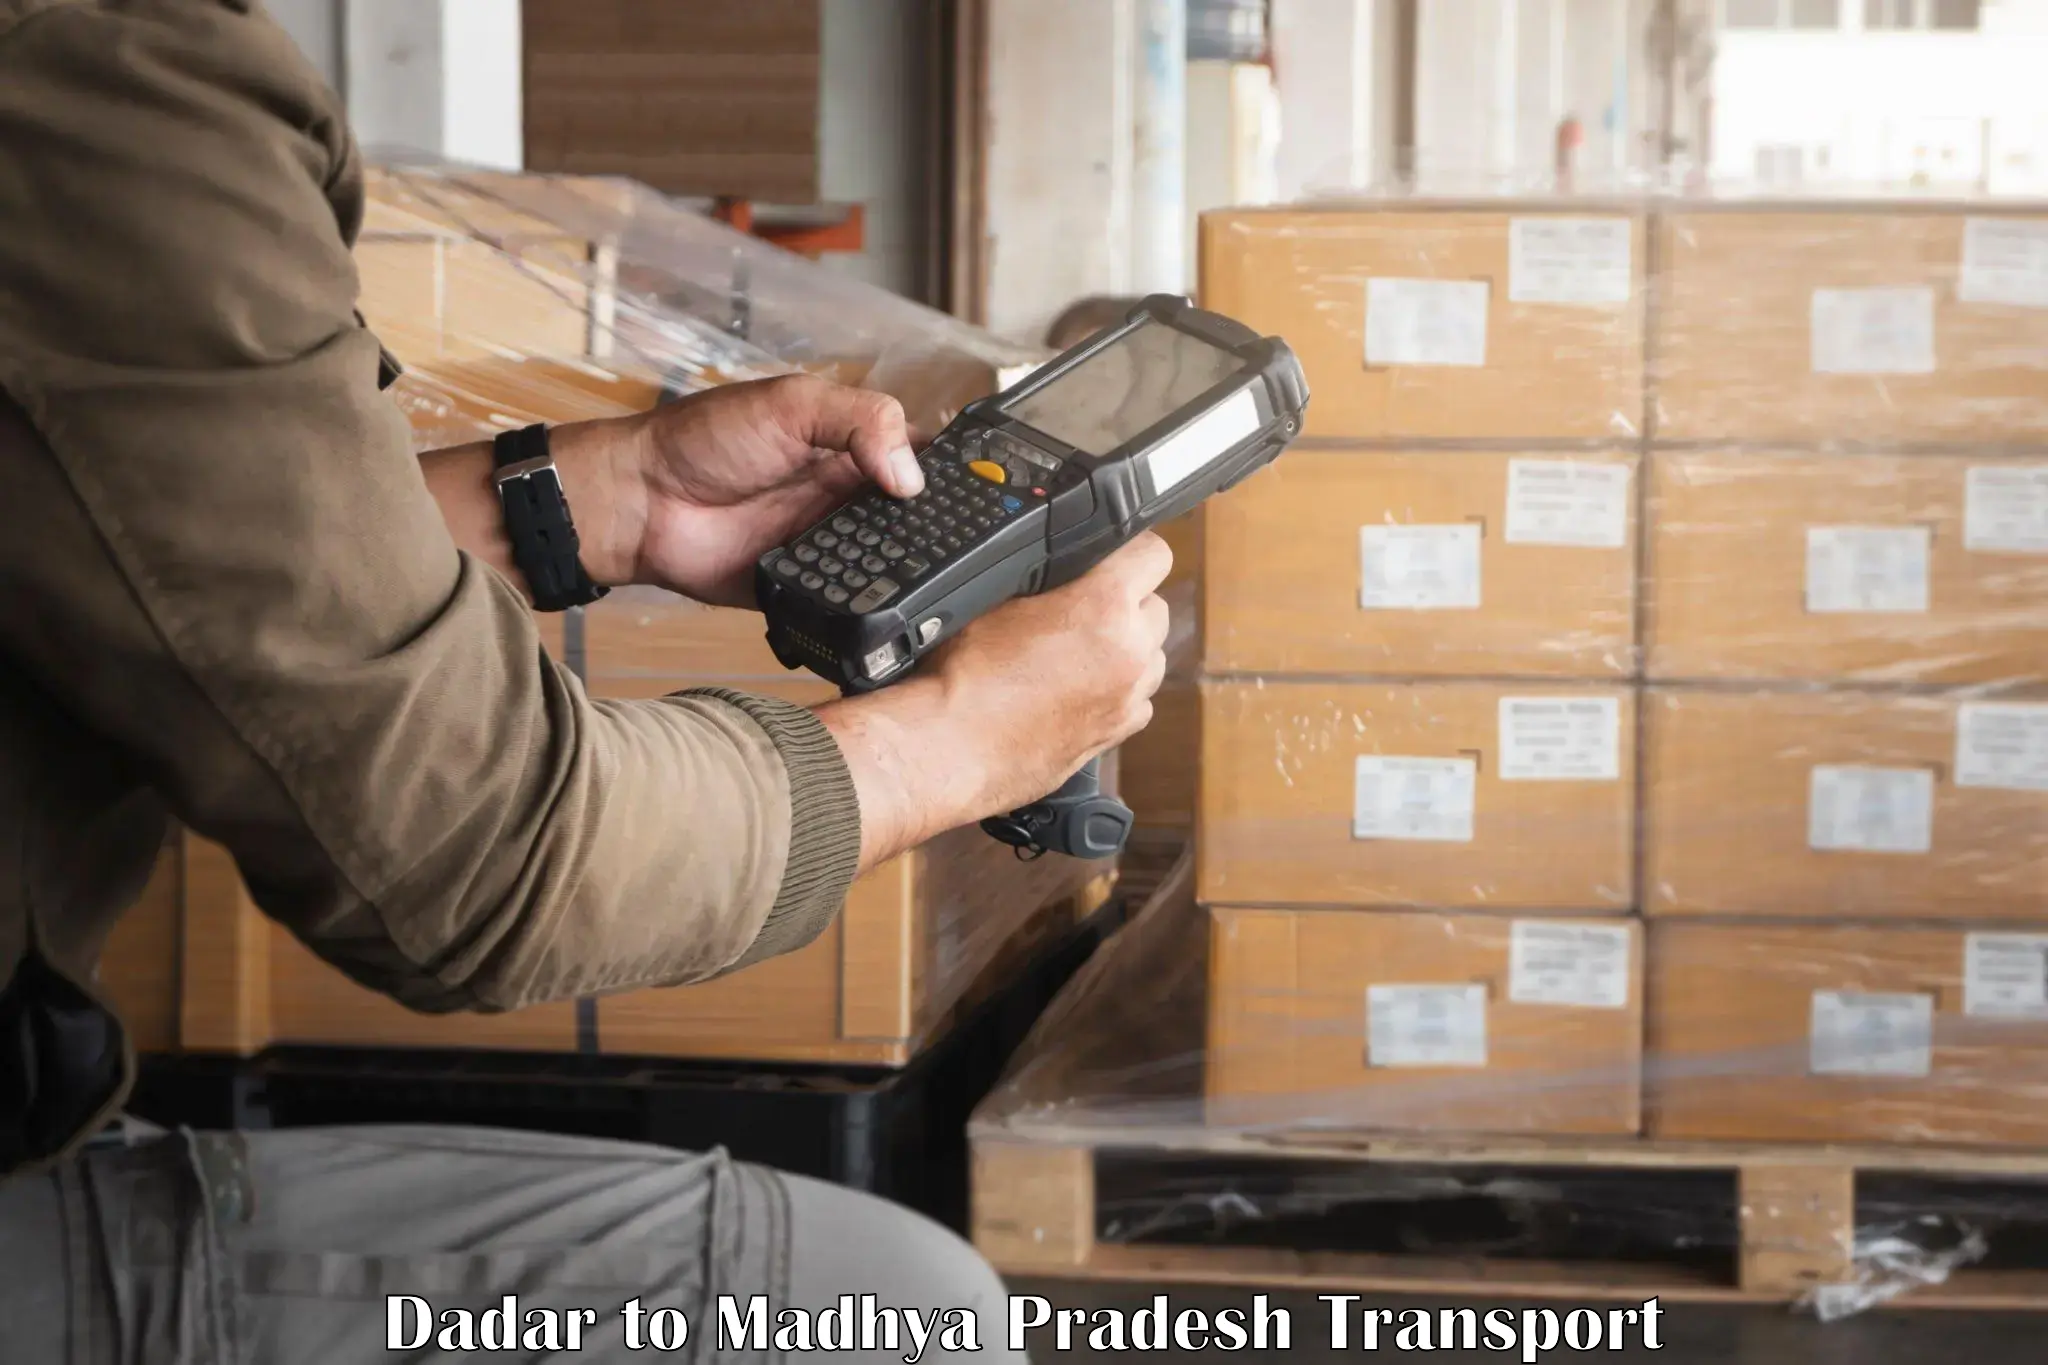 Goods delivery service Dadar to Nalkheda